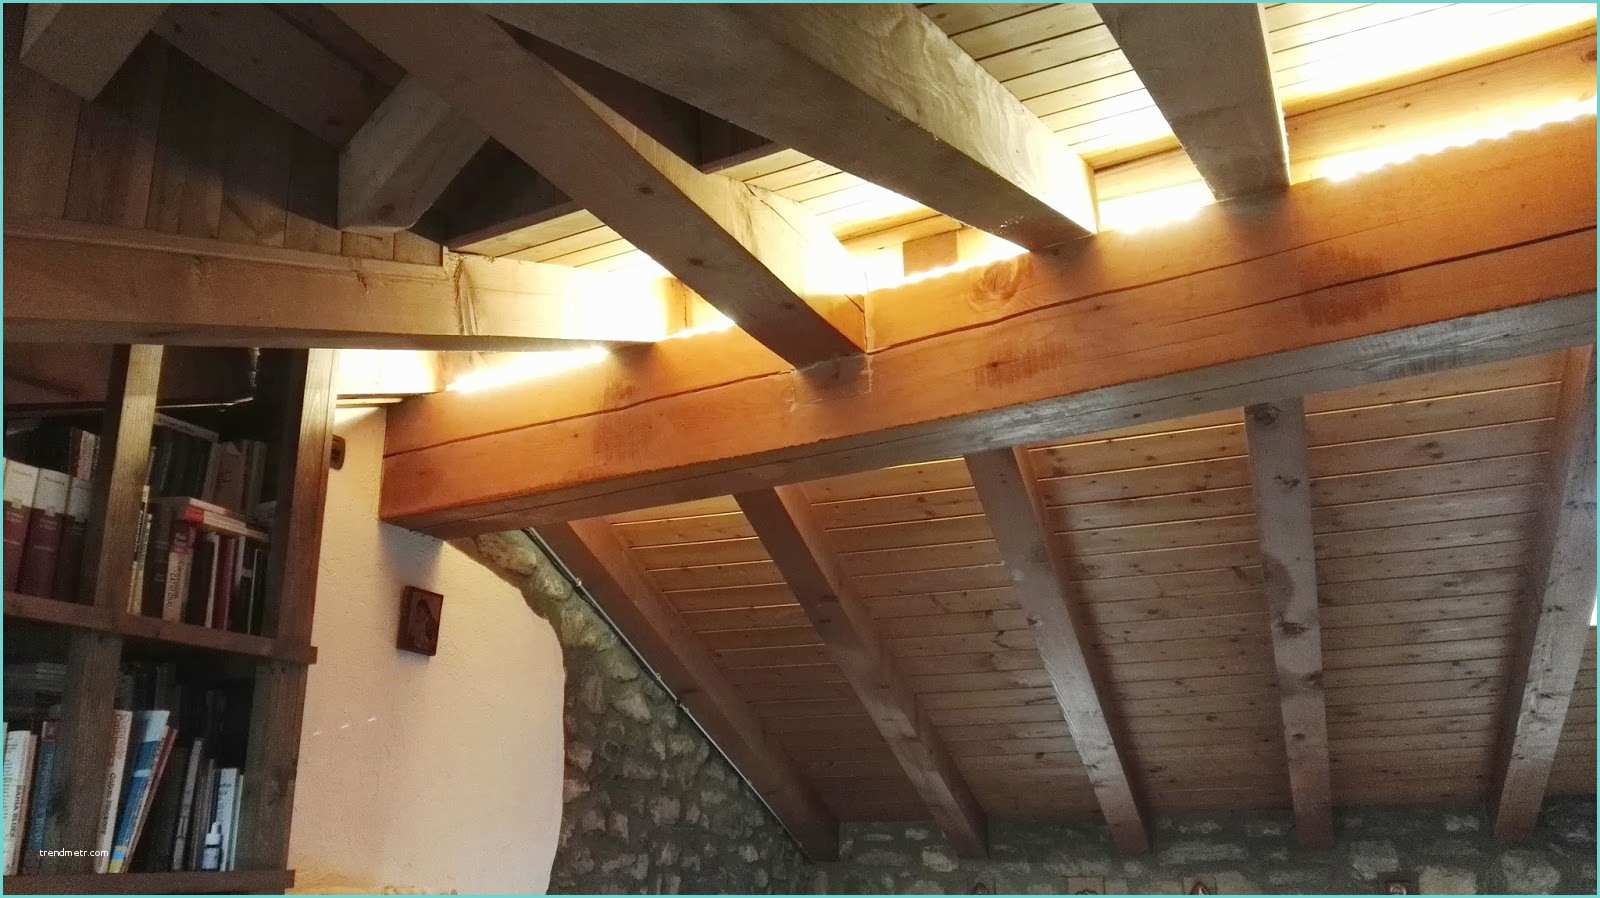 Illuminare soffitto Travi A Vista Illuminazione Travi Legno Yz59 Regardsdefemmes